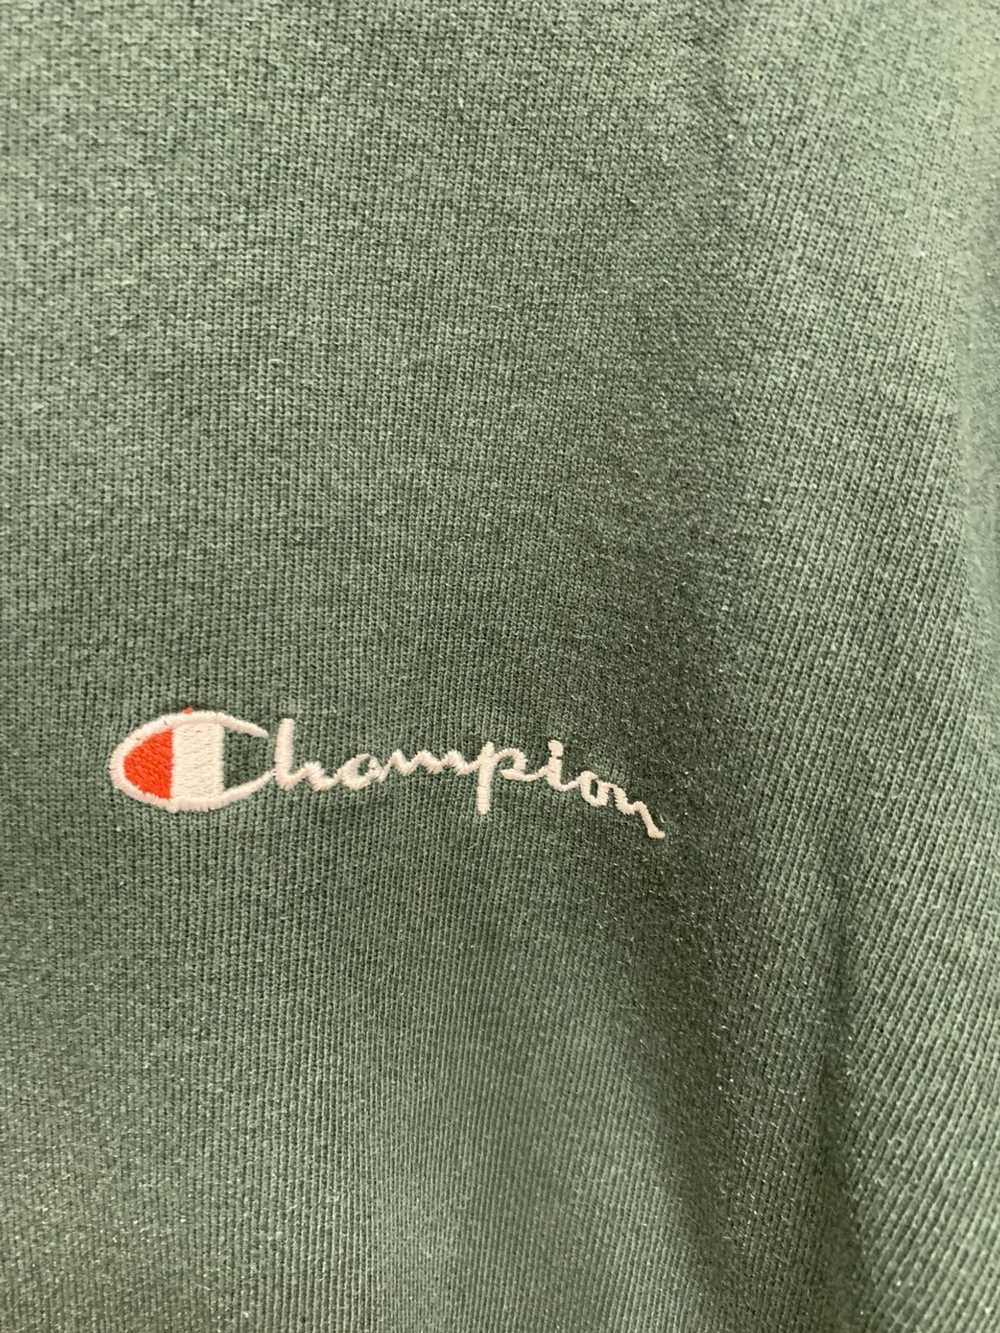 Champion × Vintage Vintage champion sweatshirt - image 3